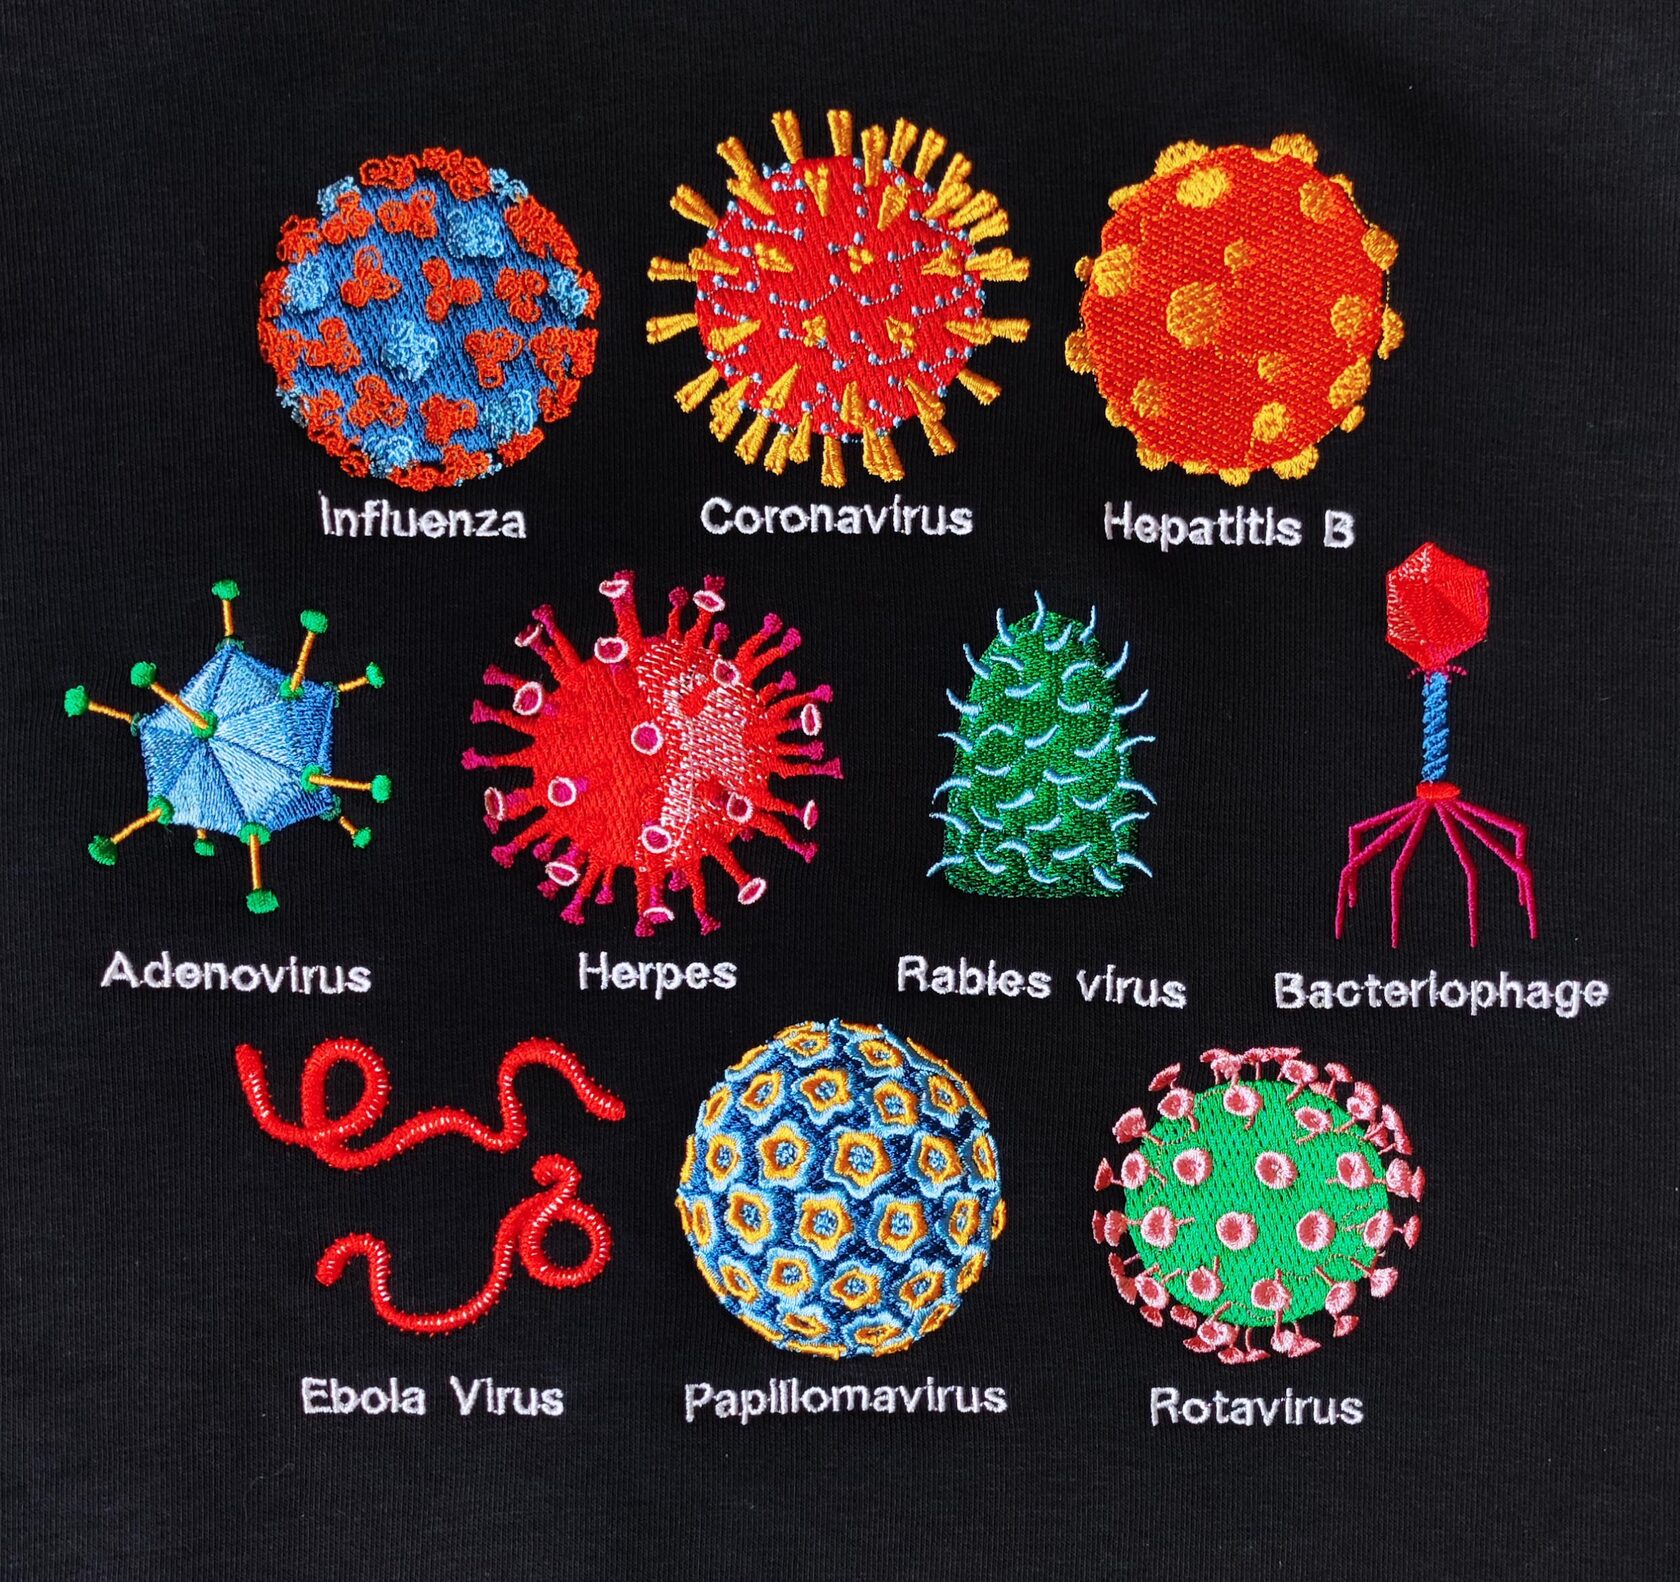 вирусы и их названия фото